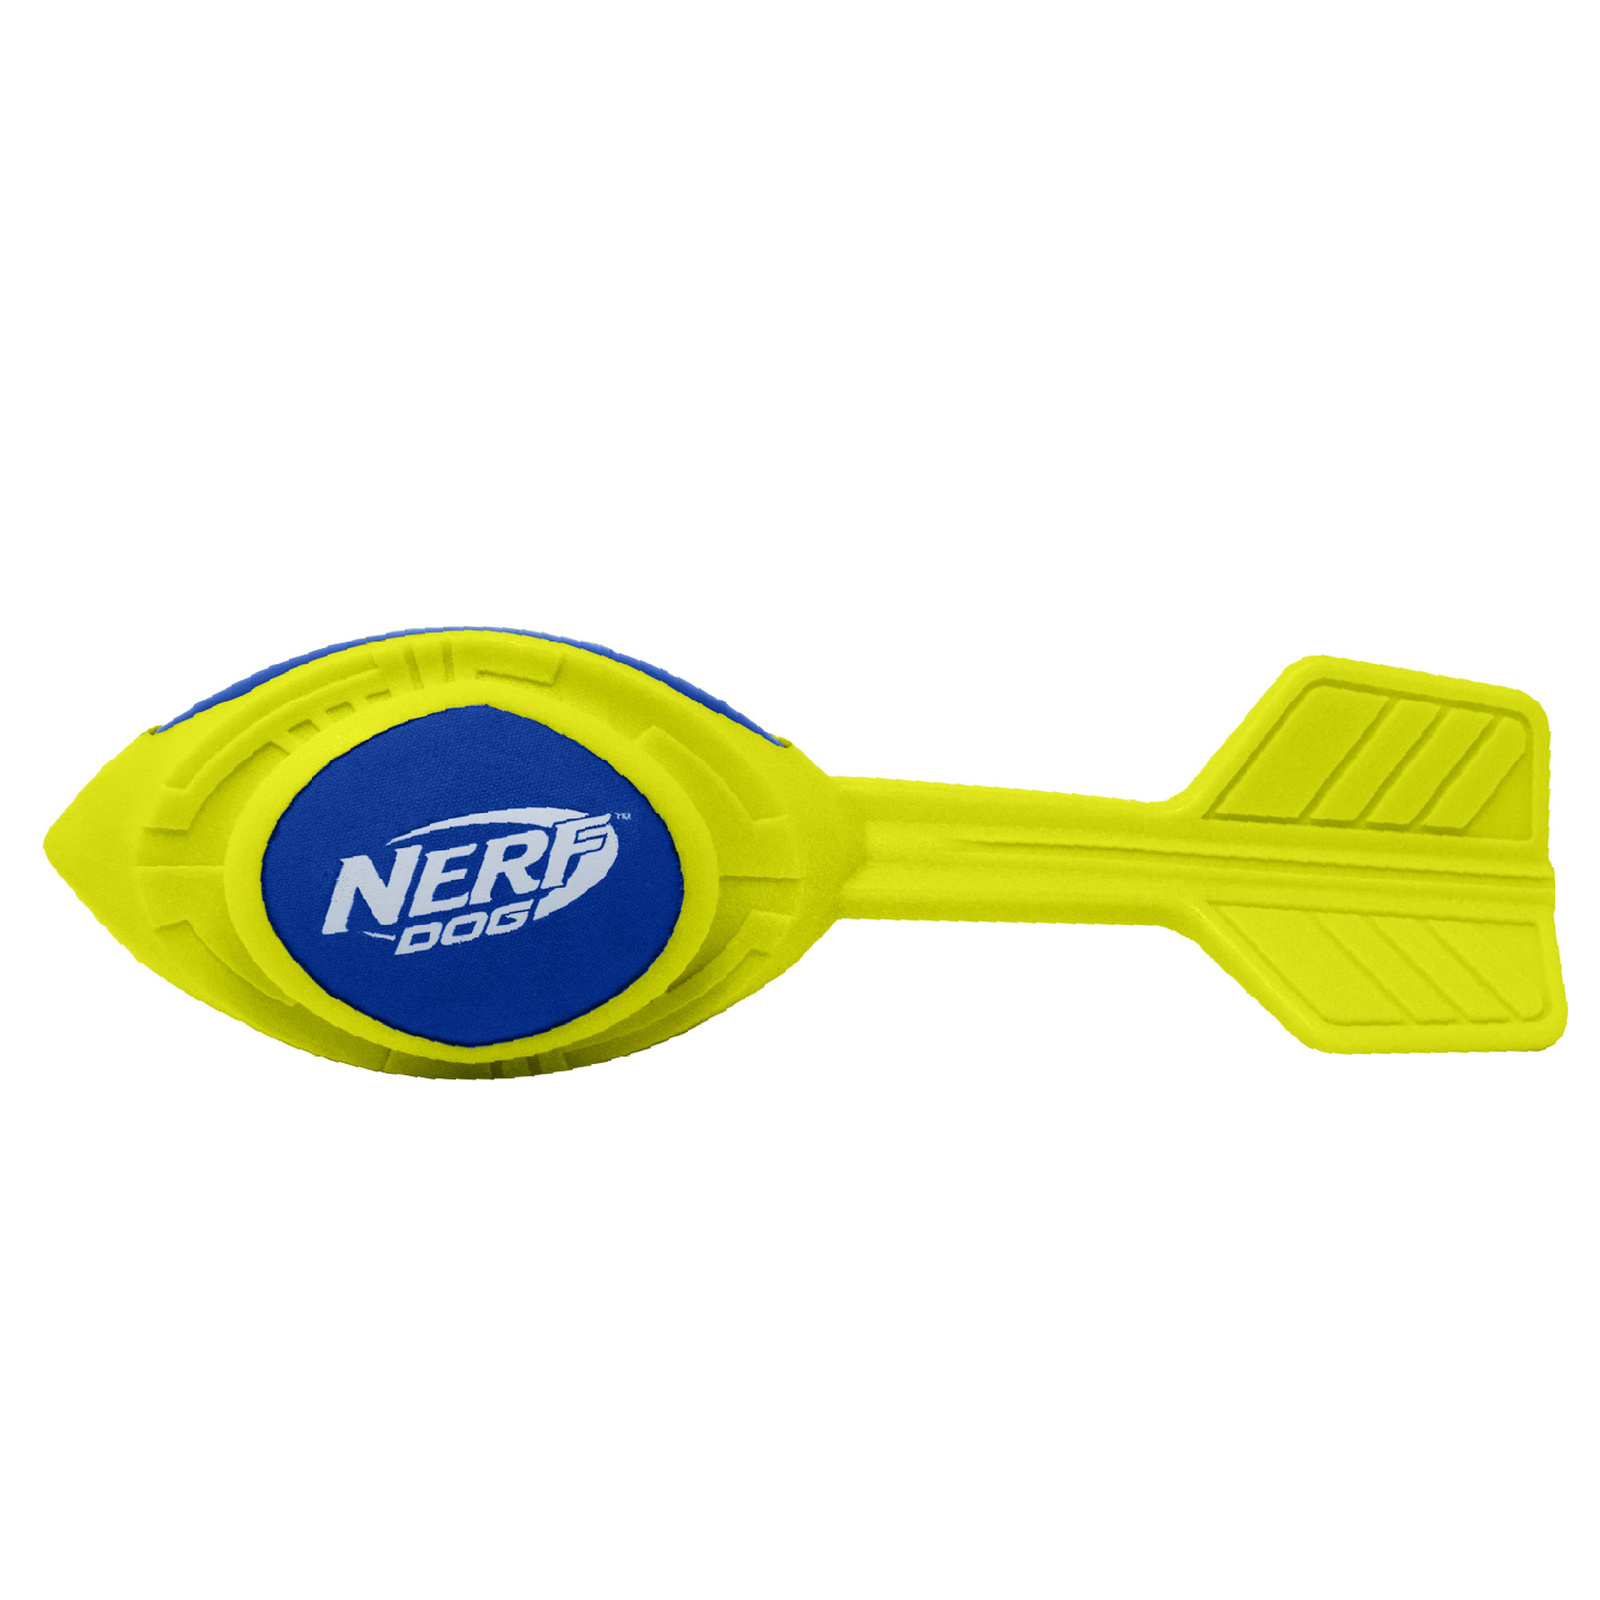 Nerf Nerf игрушка из вспененной резины 30 см (серия Мегатон) (290 г) фото